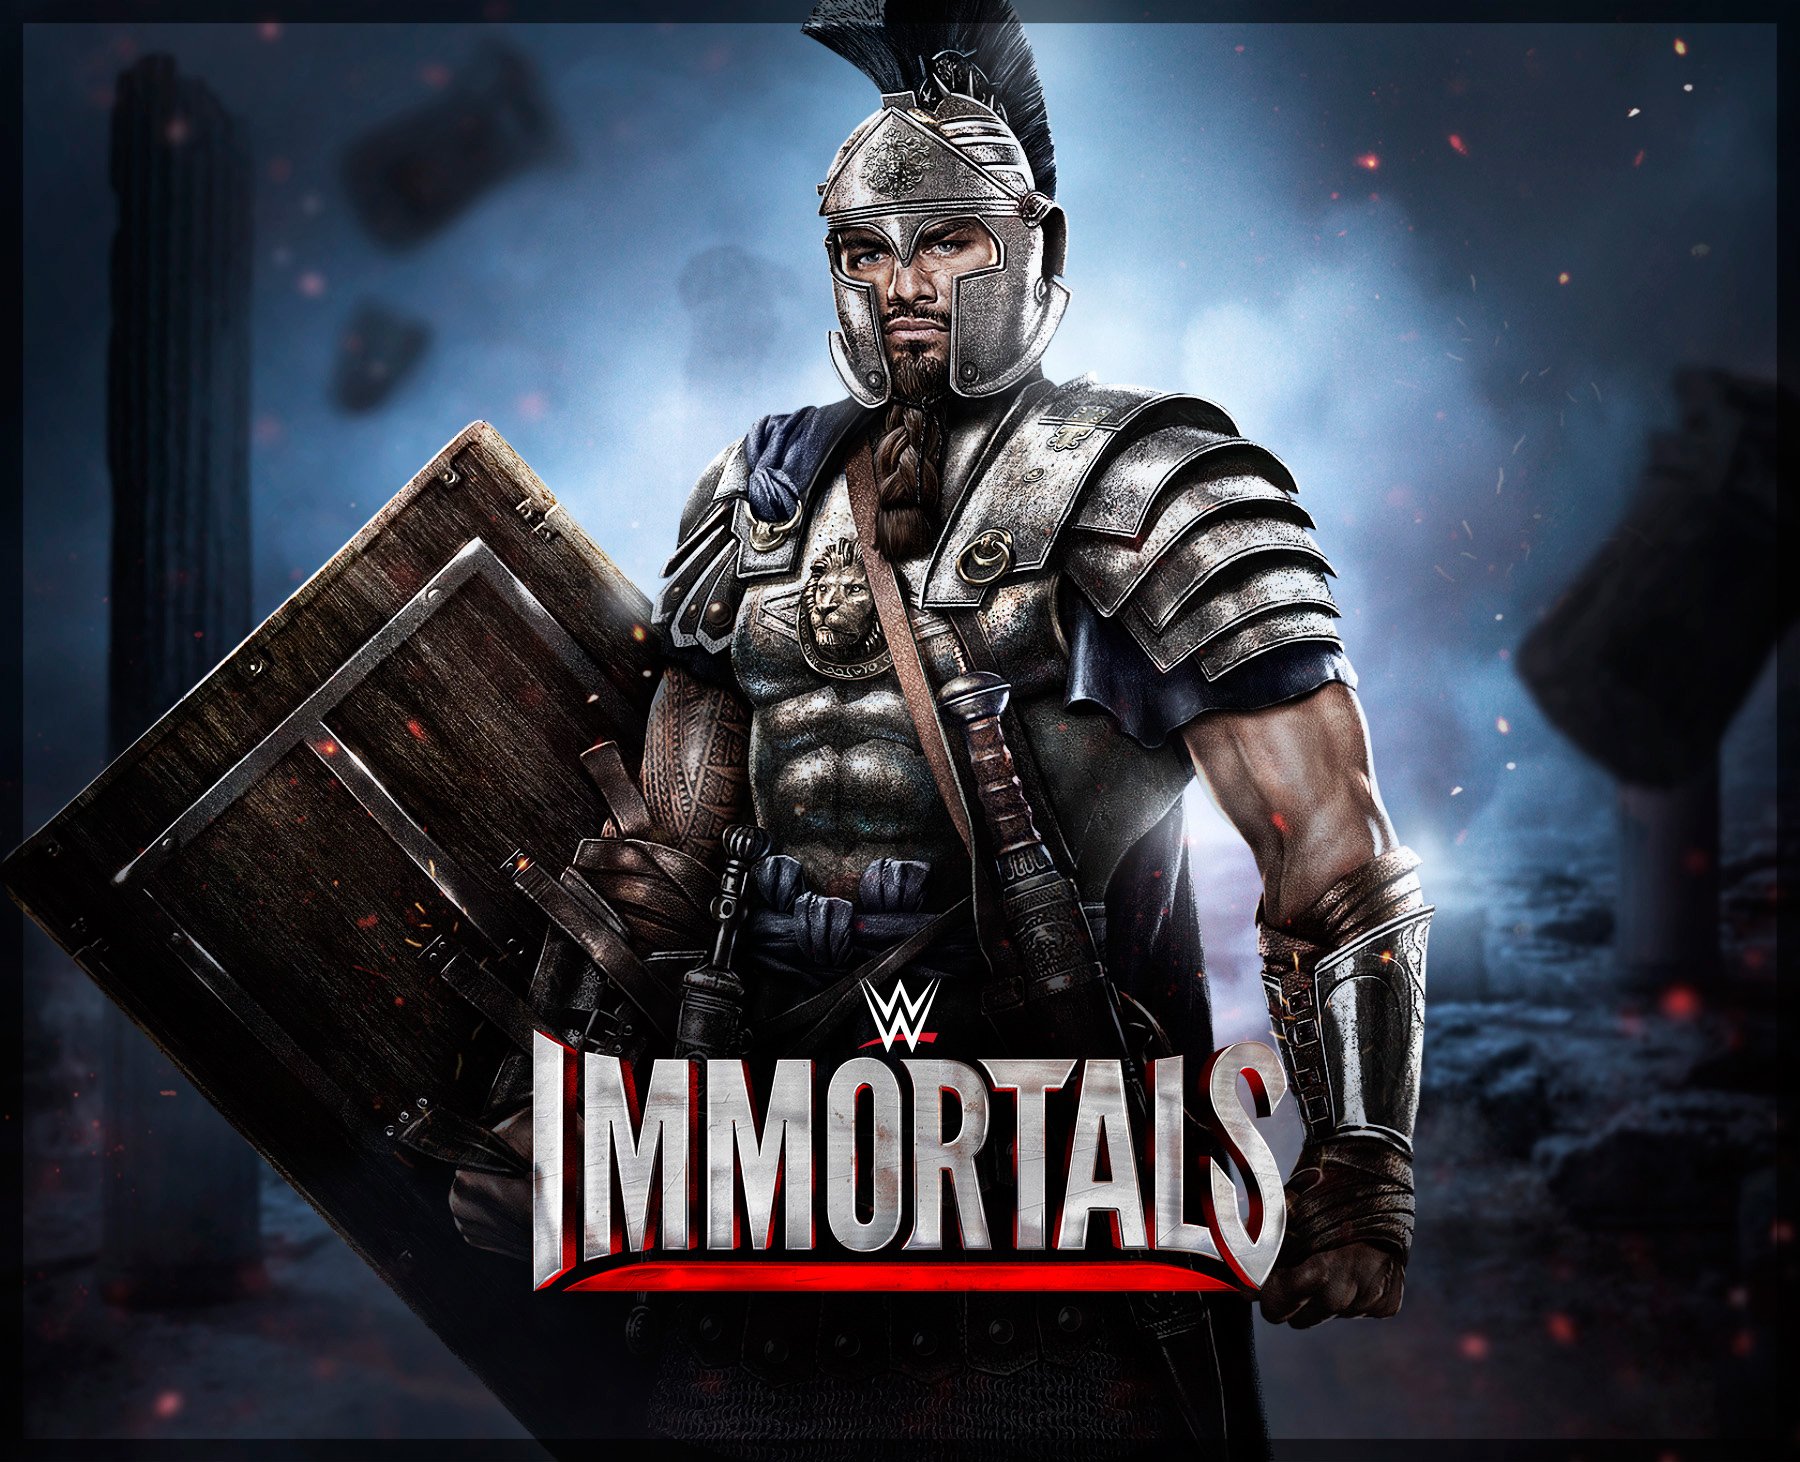 wwe, Immortals, Wrestling, Fighting, Action, Warrior Wallpaper